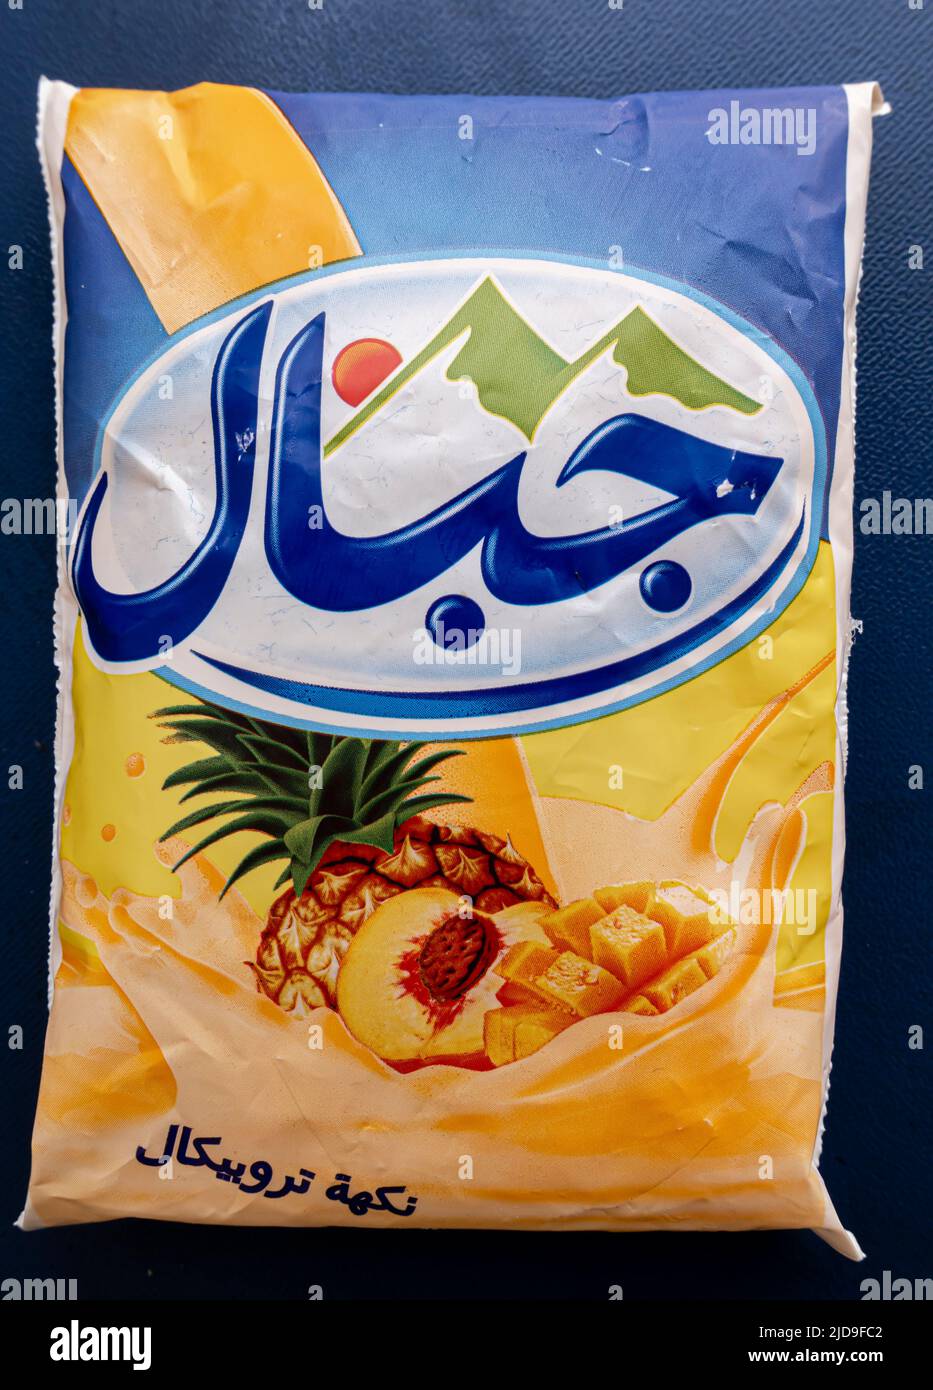 Yaourt à la yourt de Jibal yourt dans un sac en plastique - produit laitier bon marché du Maroc Banque D'Images